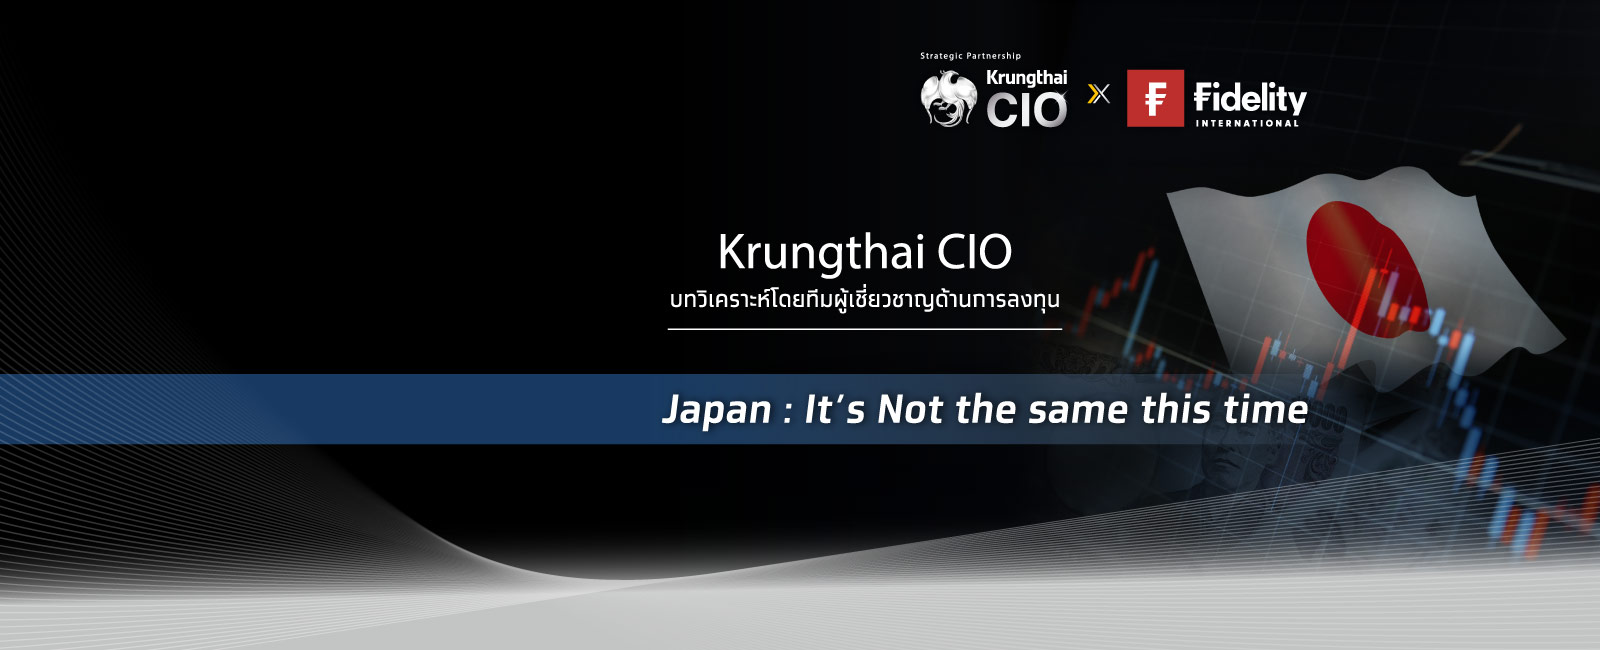 Krungthai CIO แนะลงทุนหุ้นขนาดกลางและเล็กในสหรัฐ รับประโยชน์ดอกเบี้ยขาลง